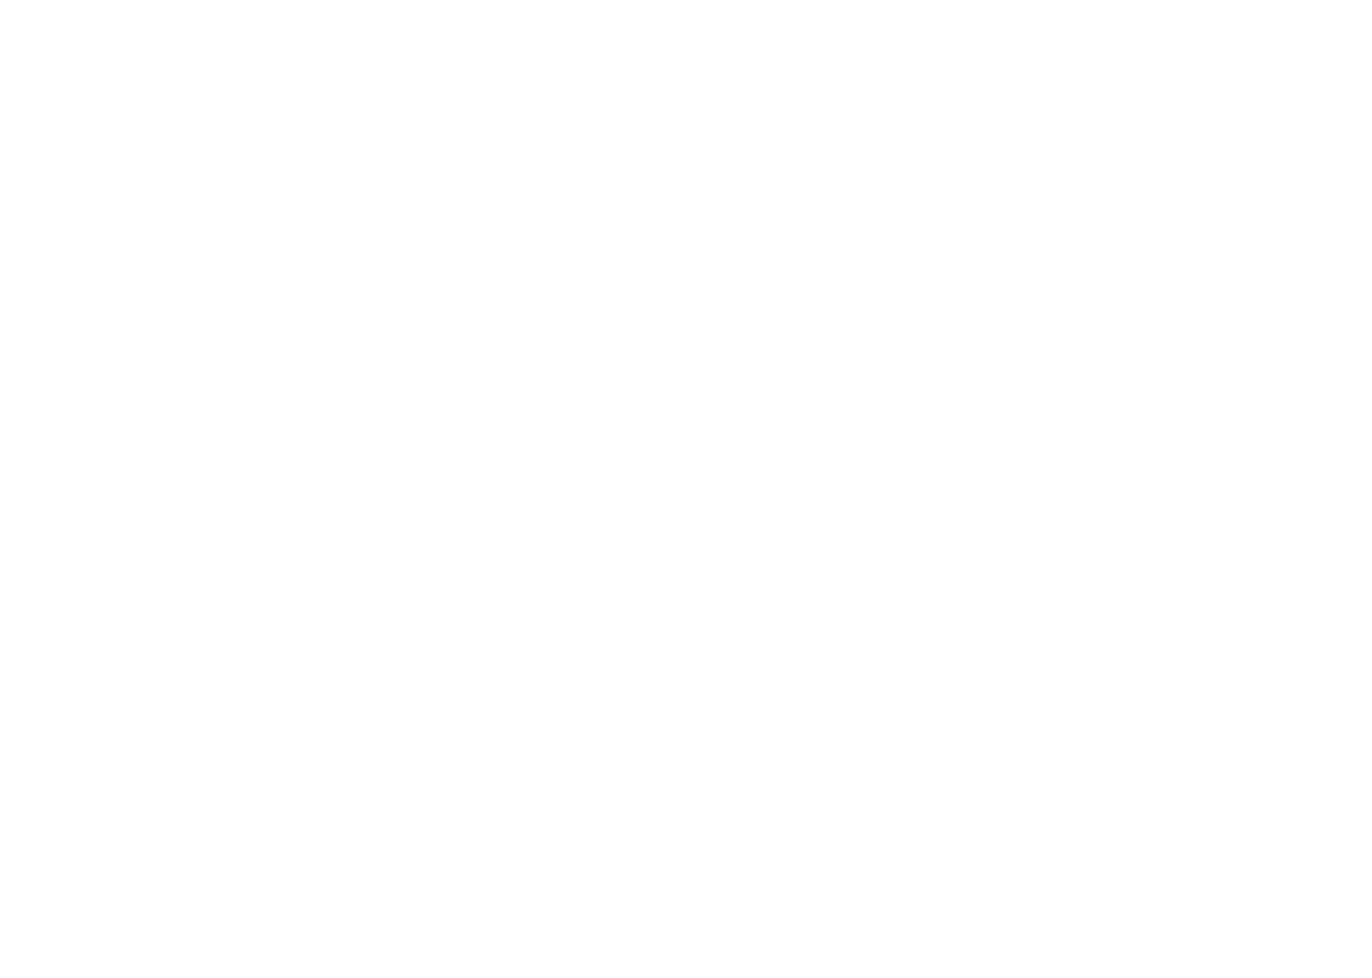 BioLineRx logo for dark backgrounds (transparent PNG)